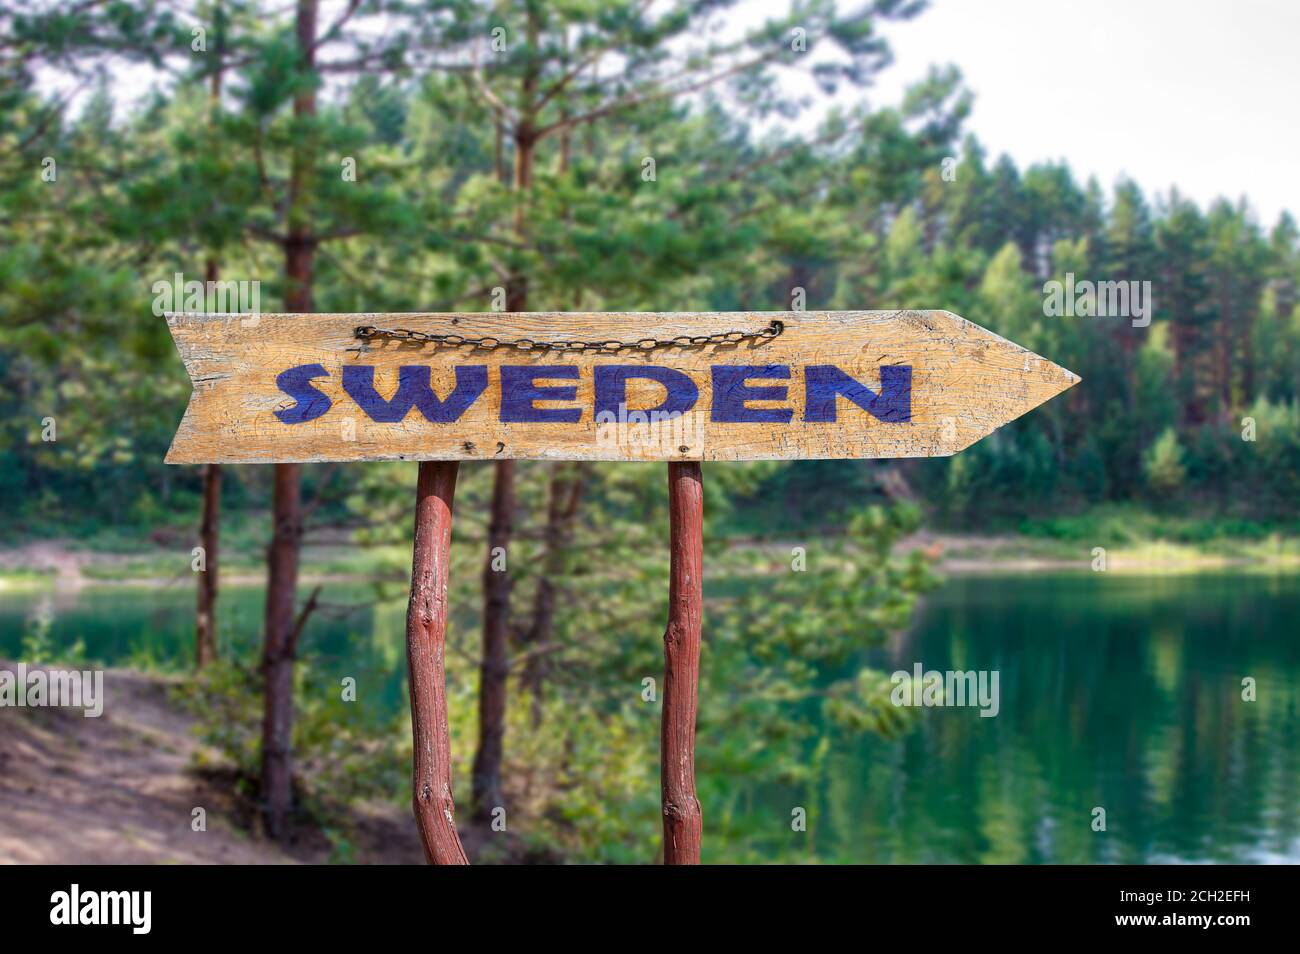 SUECIA señal de madera de la carretera de flecha contra el lago y los árboles de pino fondo. Viajar a Suecia concepto. Foto de stock